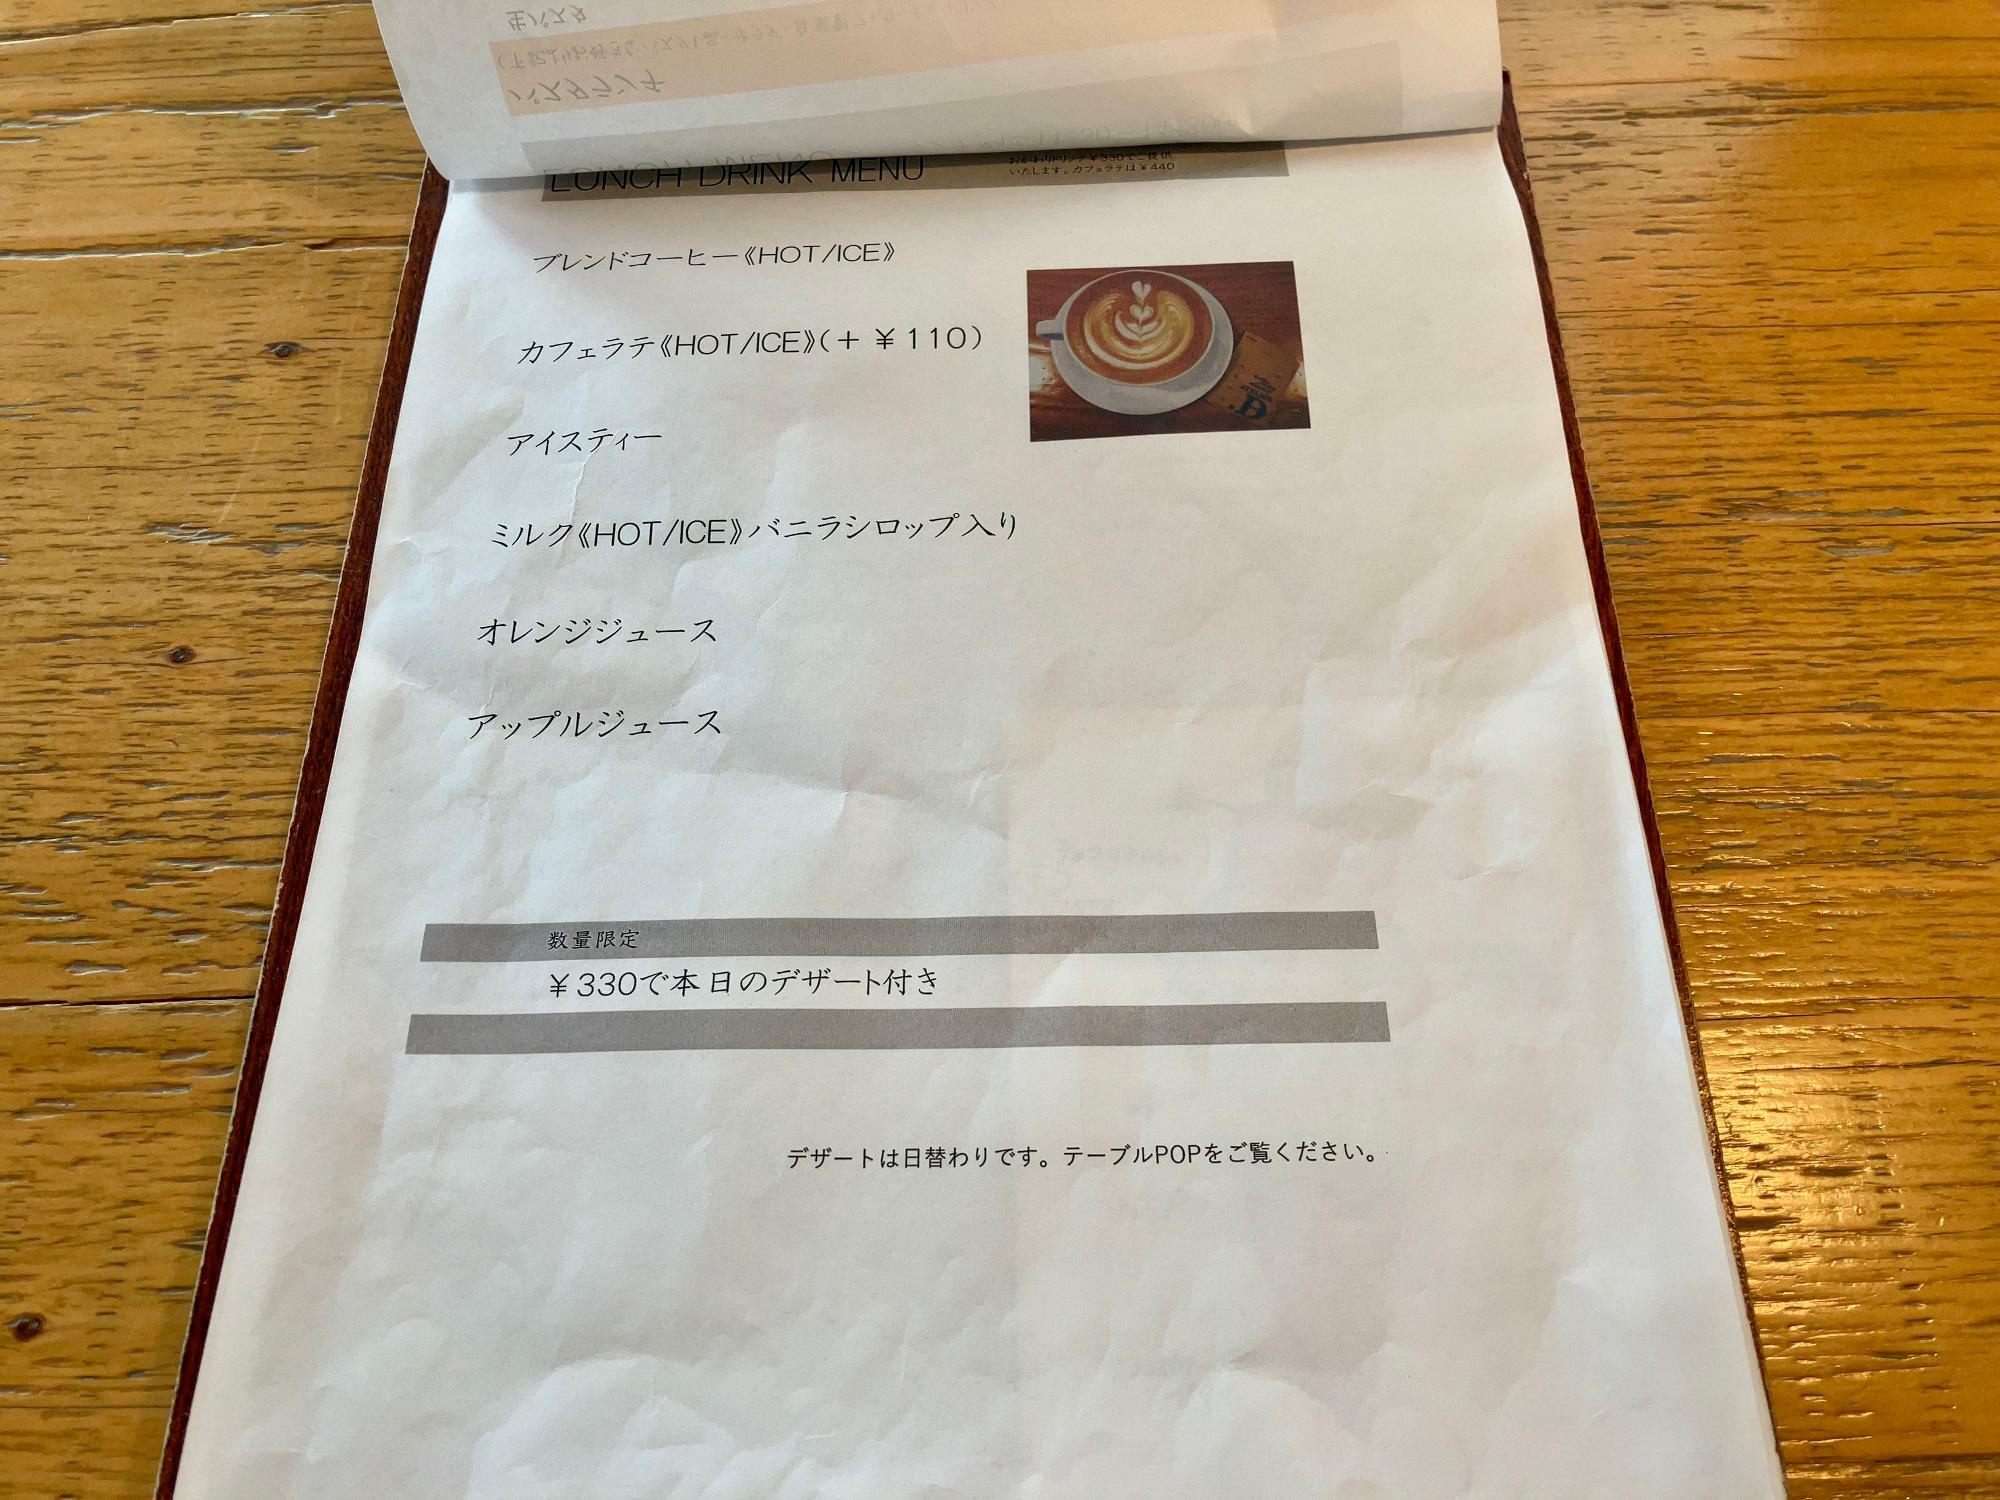 カフェラテは+110円で注文できますよ。